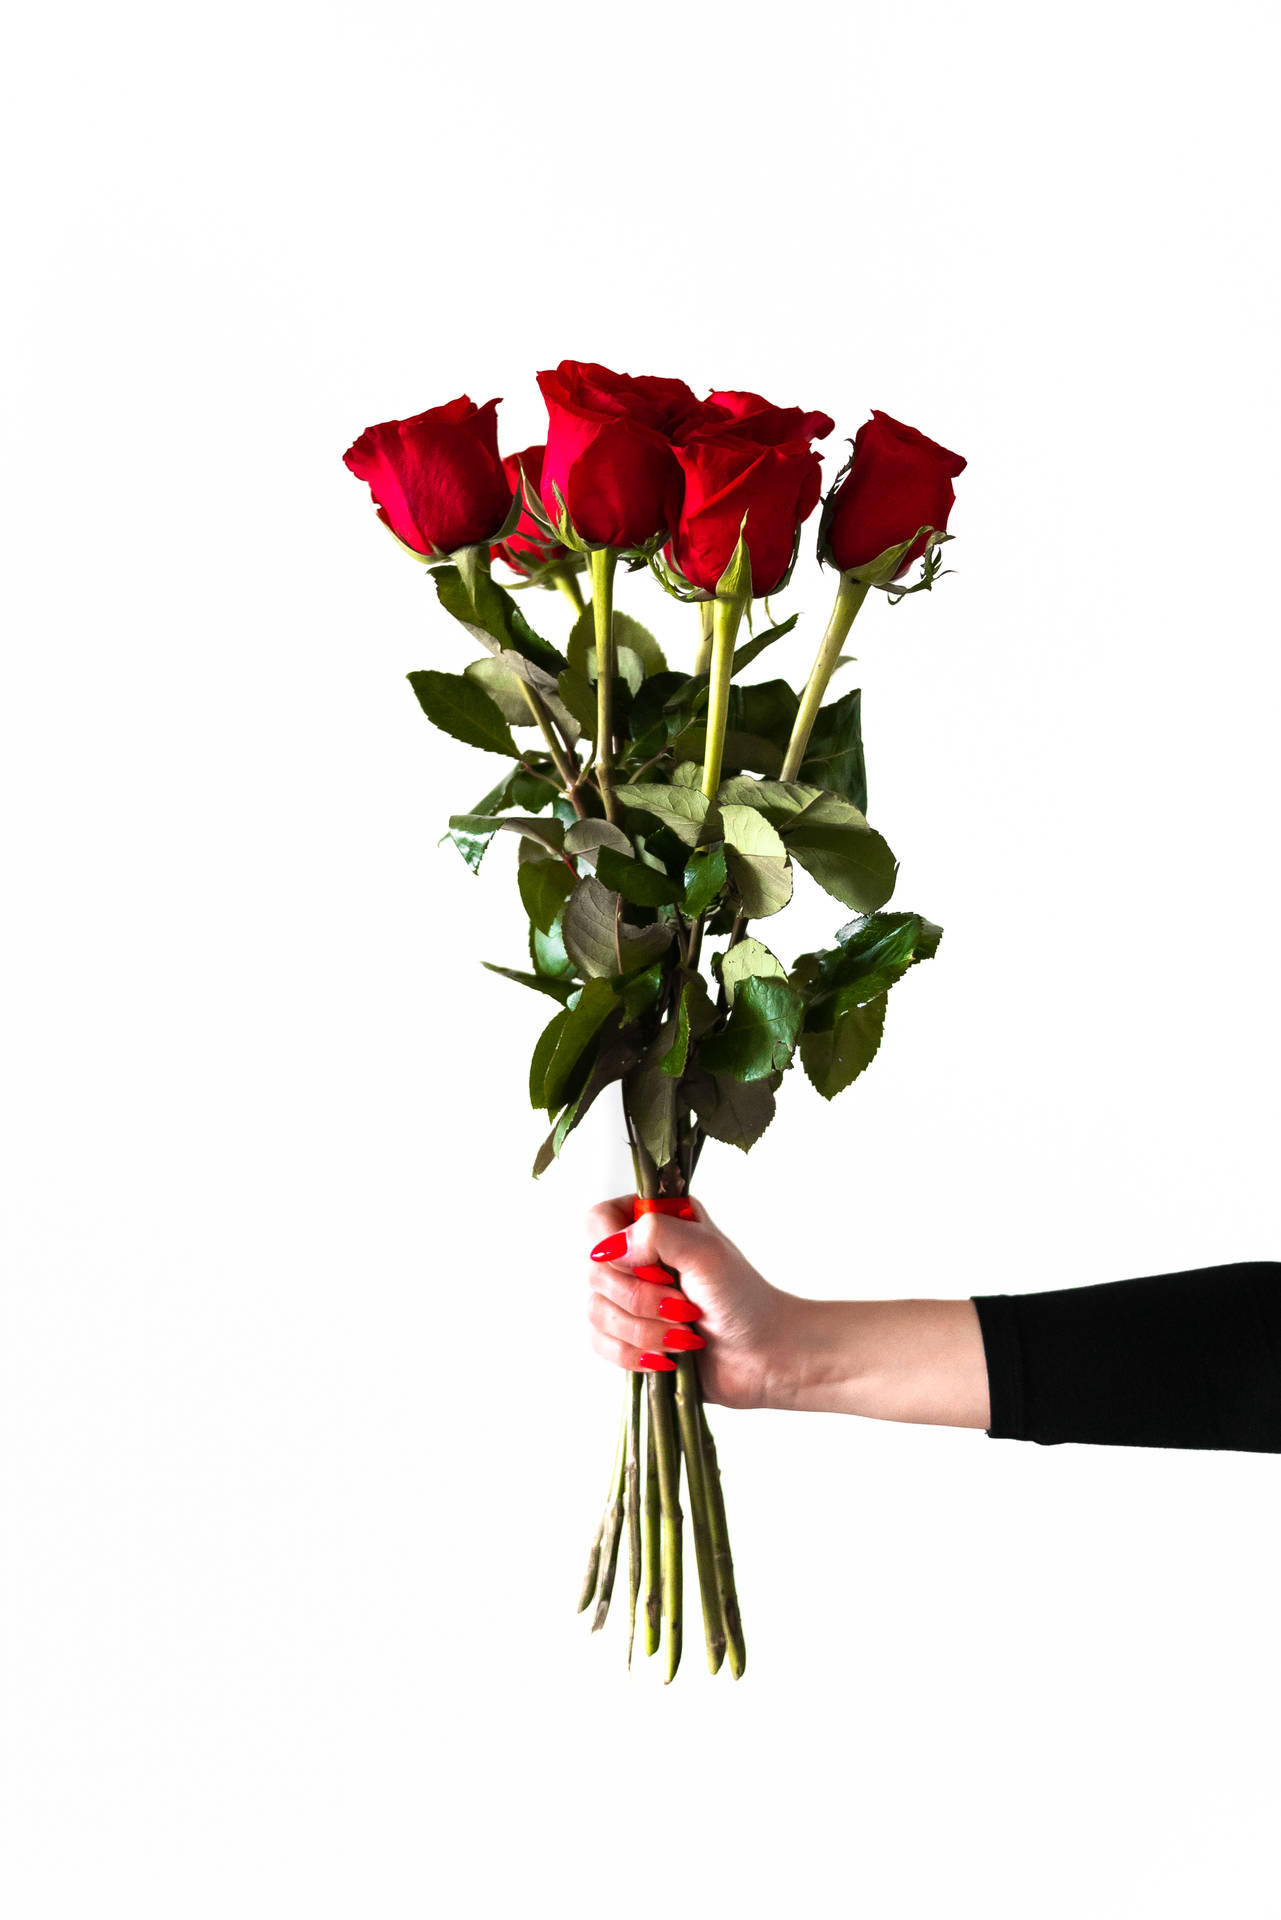 Romantischeliebesblumen Aus Roten Rosen Wallpaper